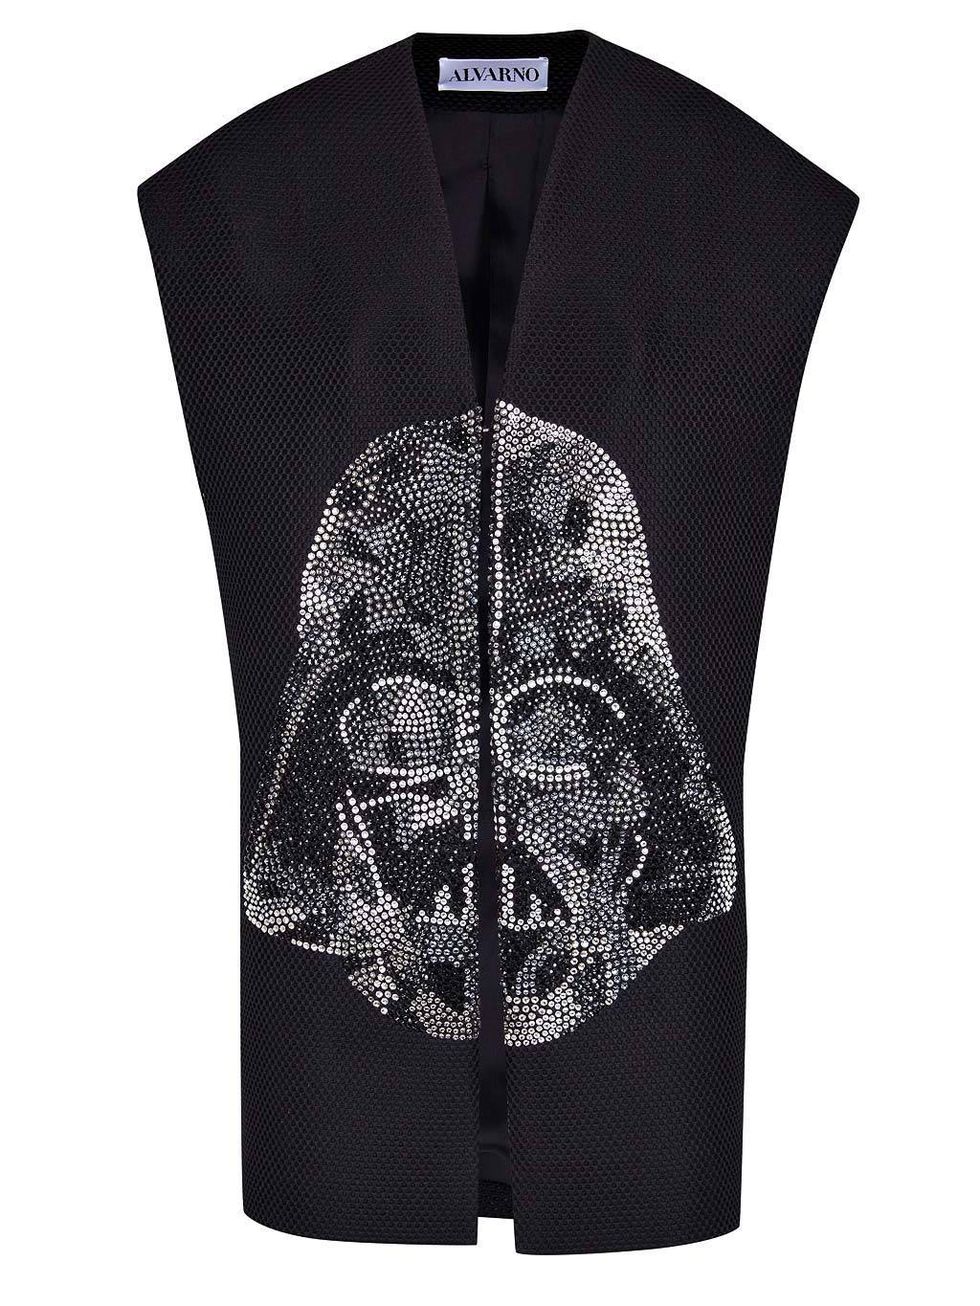 <p>El malvado Darth Vader luce su cara más amable sobre este chaleco de neopreno, realizado en 3D con cristales. Es la propuesta de Alvarno para vestir como un auténtico Jedi. <a href="http://alvarno.com/" title="www.alvarno.com" target="_blank"><i>www.alvarno.com</i></a></p>